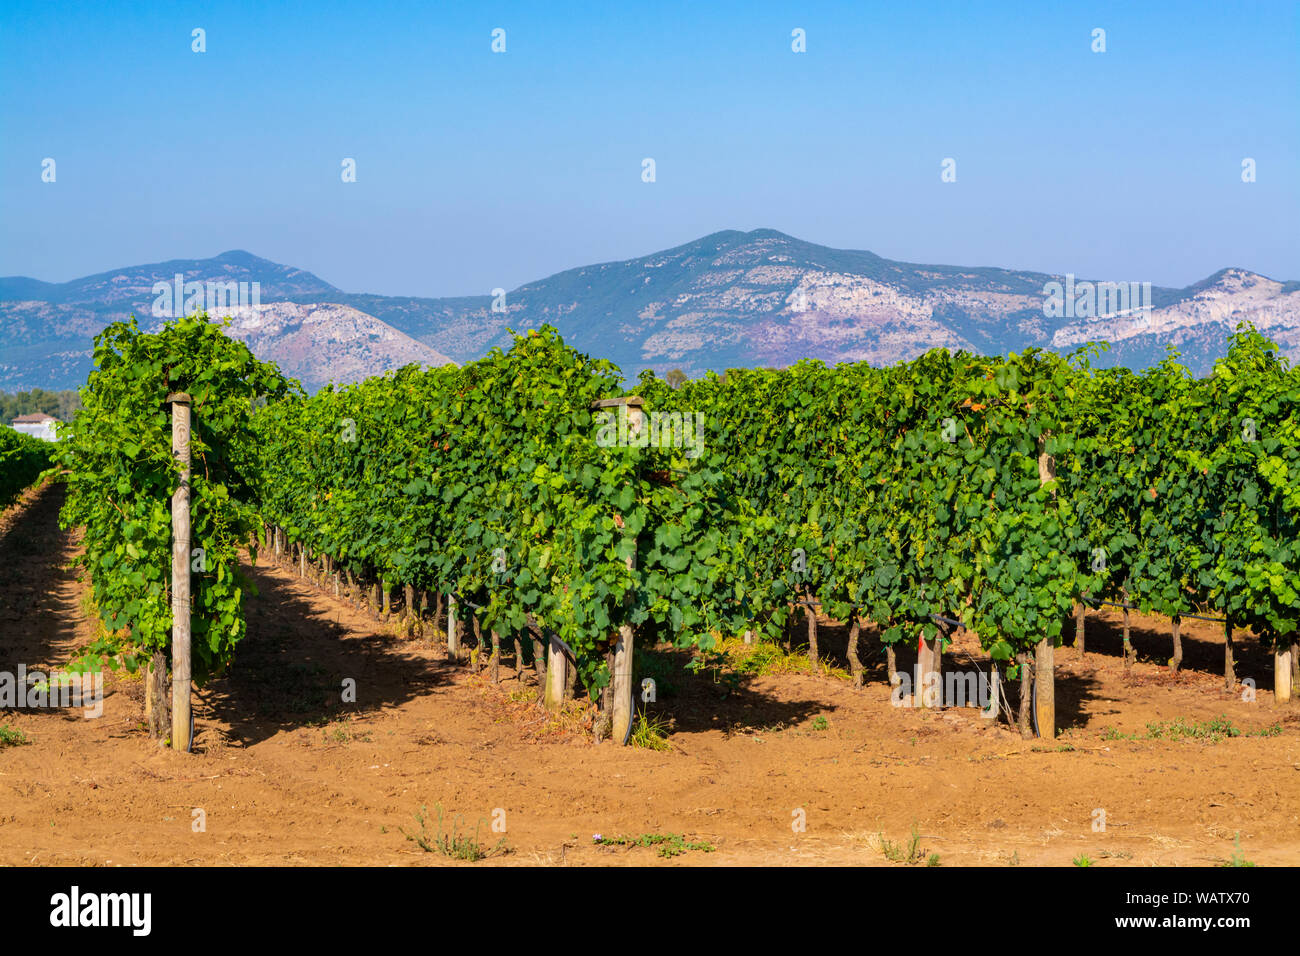 Vigneto con crescente di colore rosso o rosa di uve da vino nella regione Lazio, l'Italia, Sirah, Petit Verdot, uve Cabernet Sauvignon Foto Stock